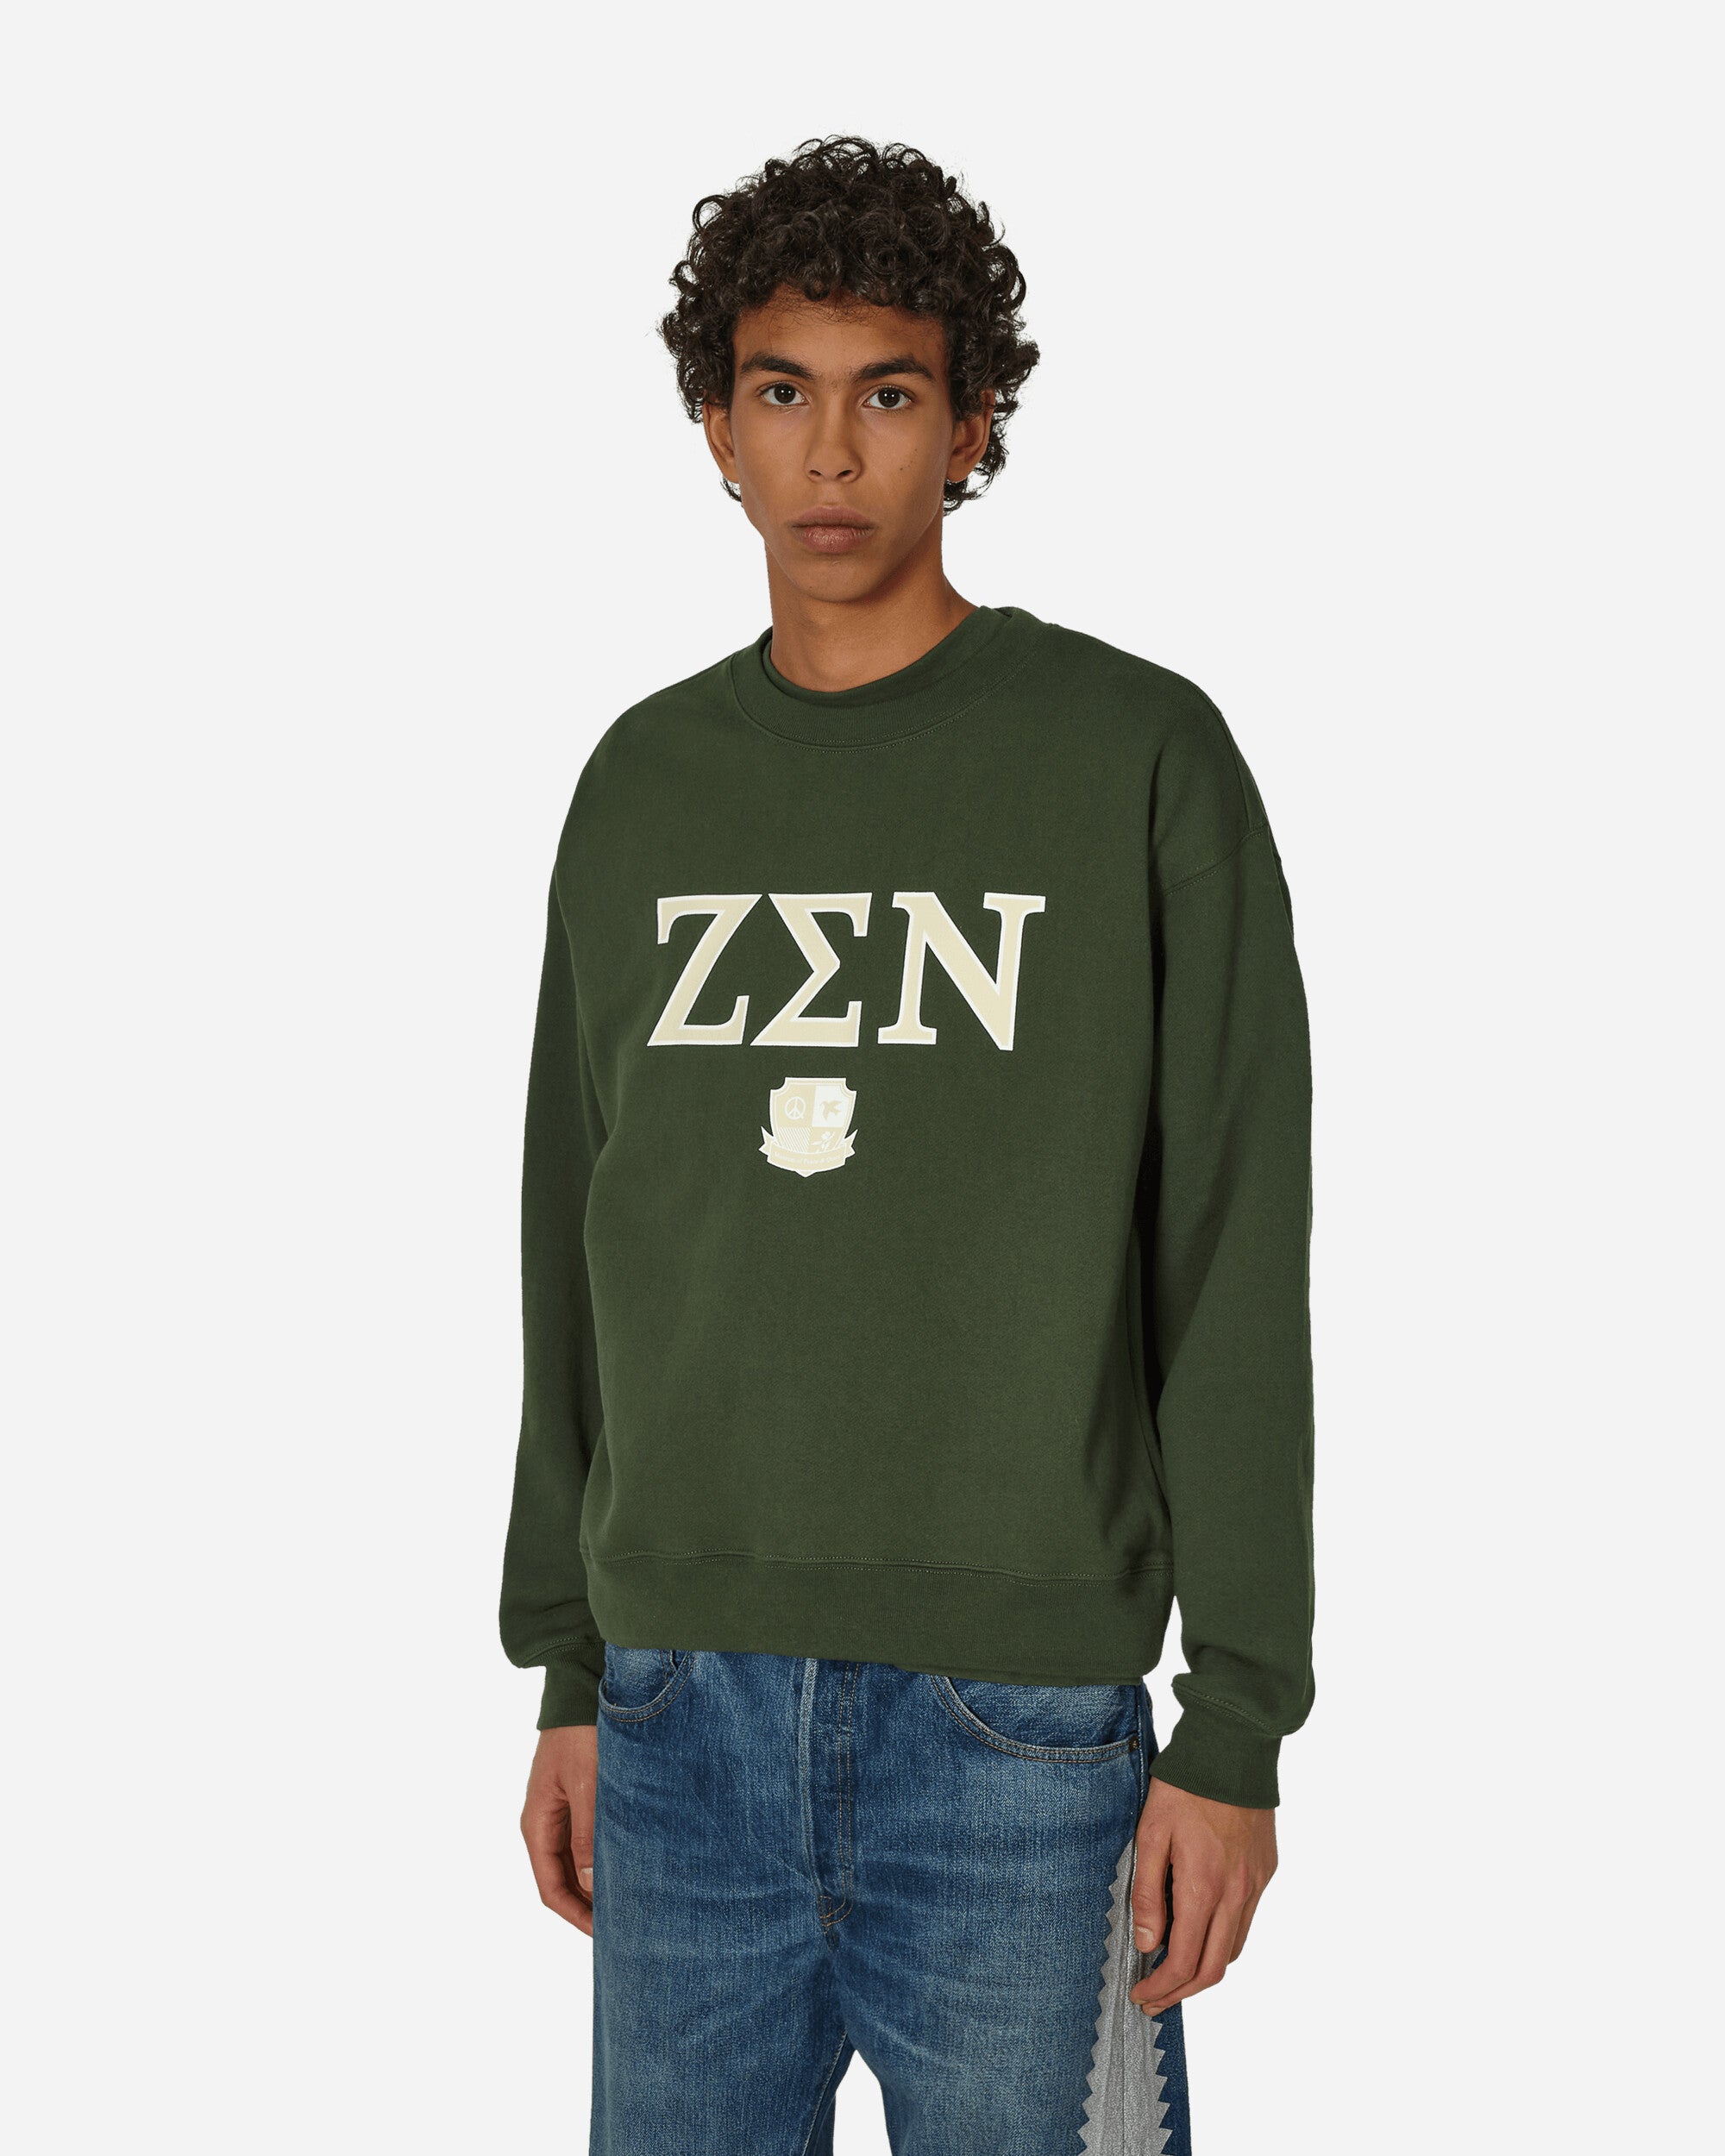 Zen Crewneck Sweatshirt Forest